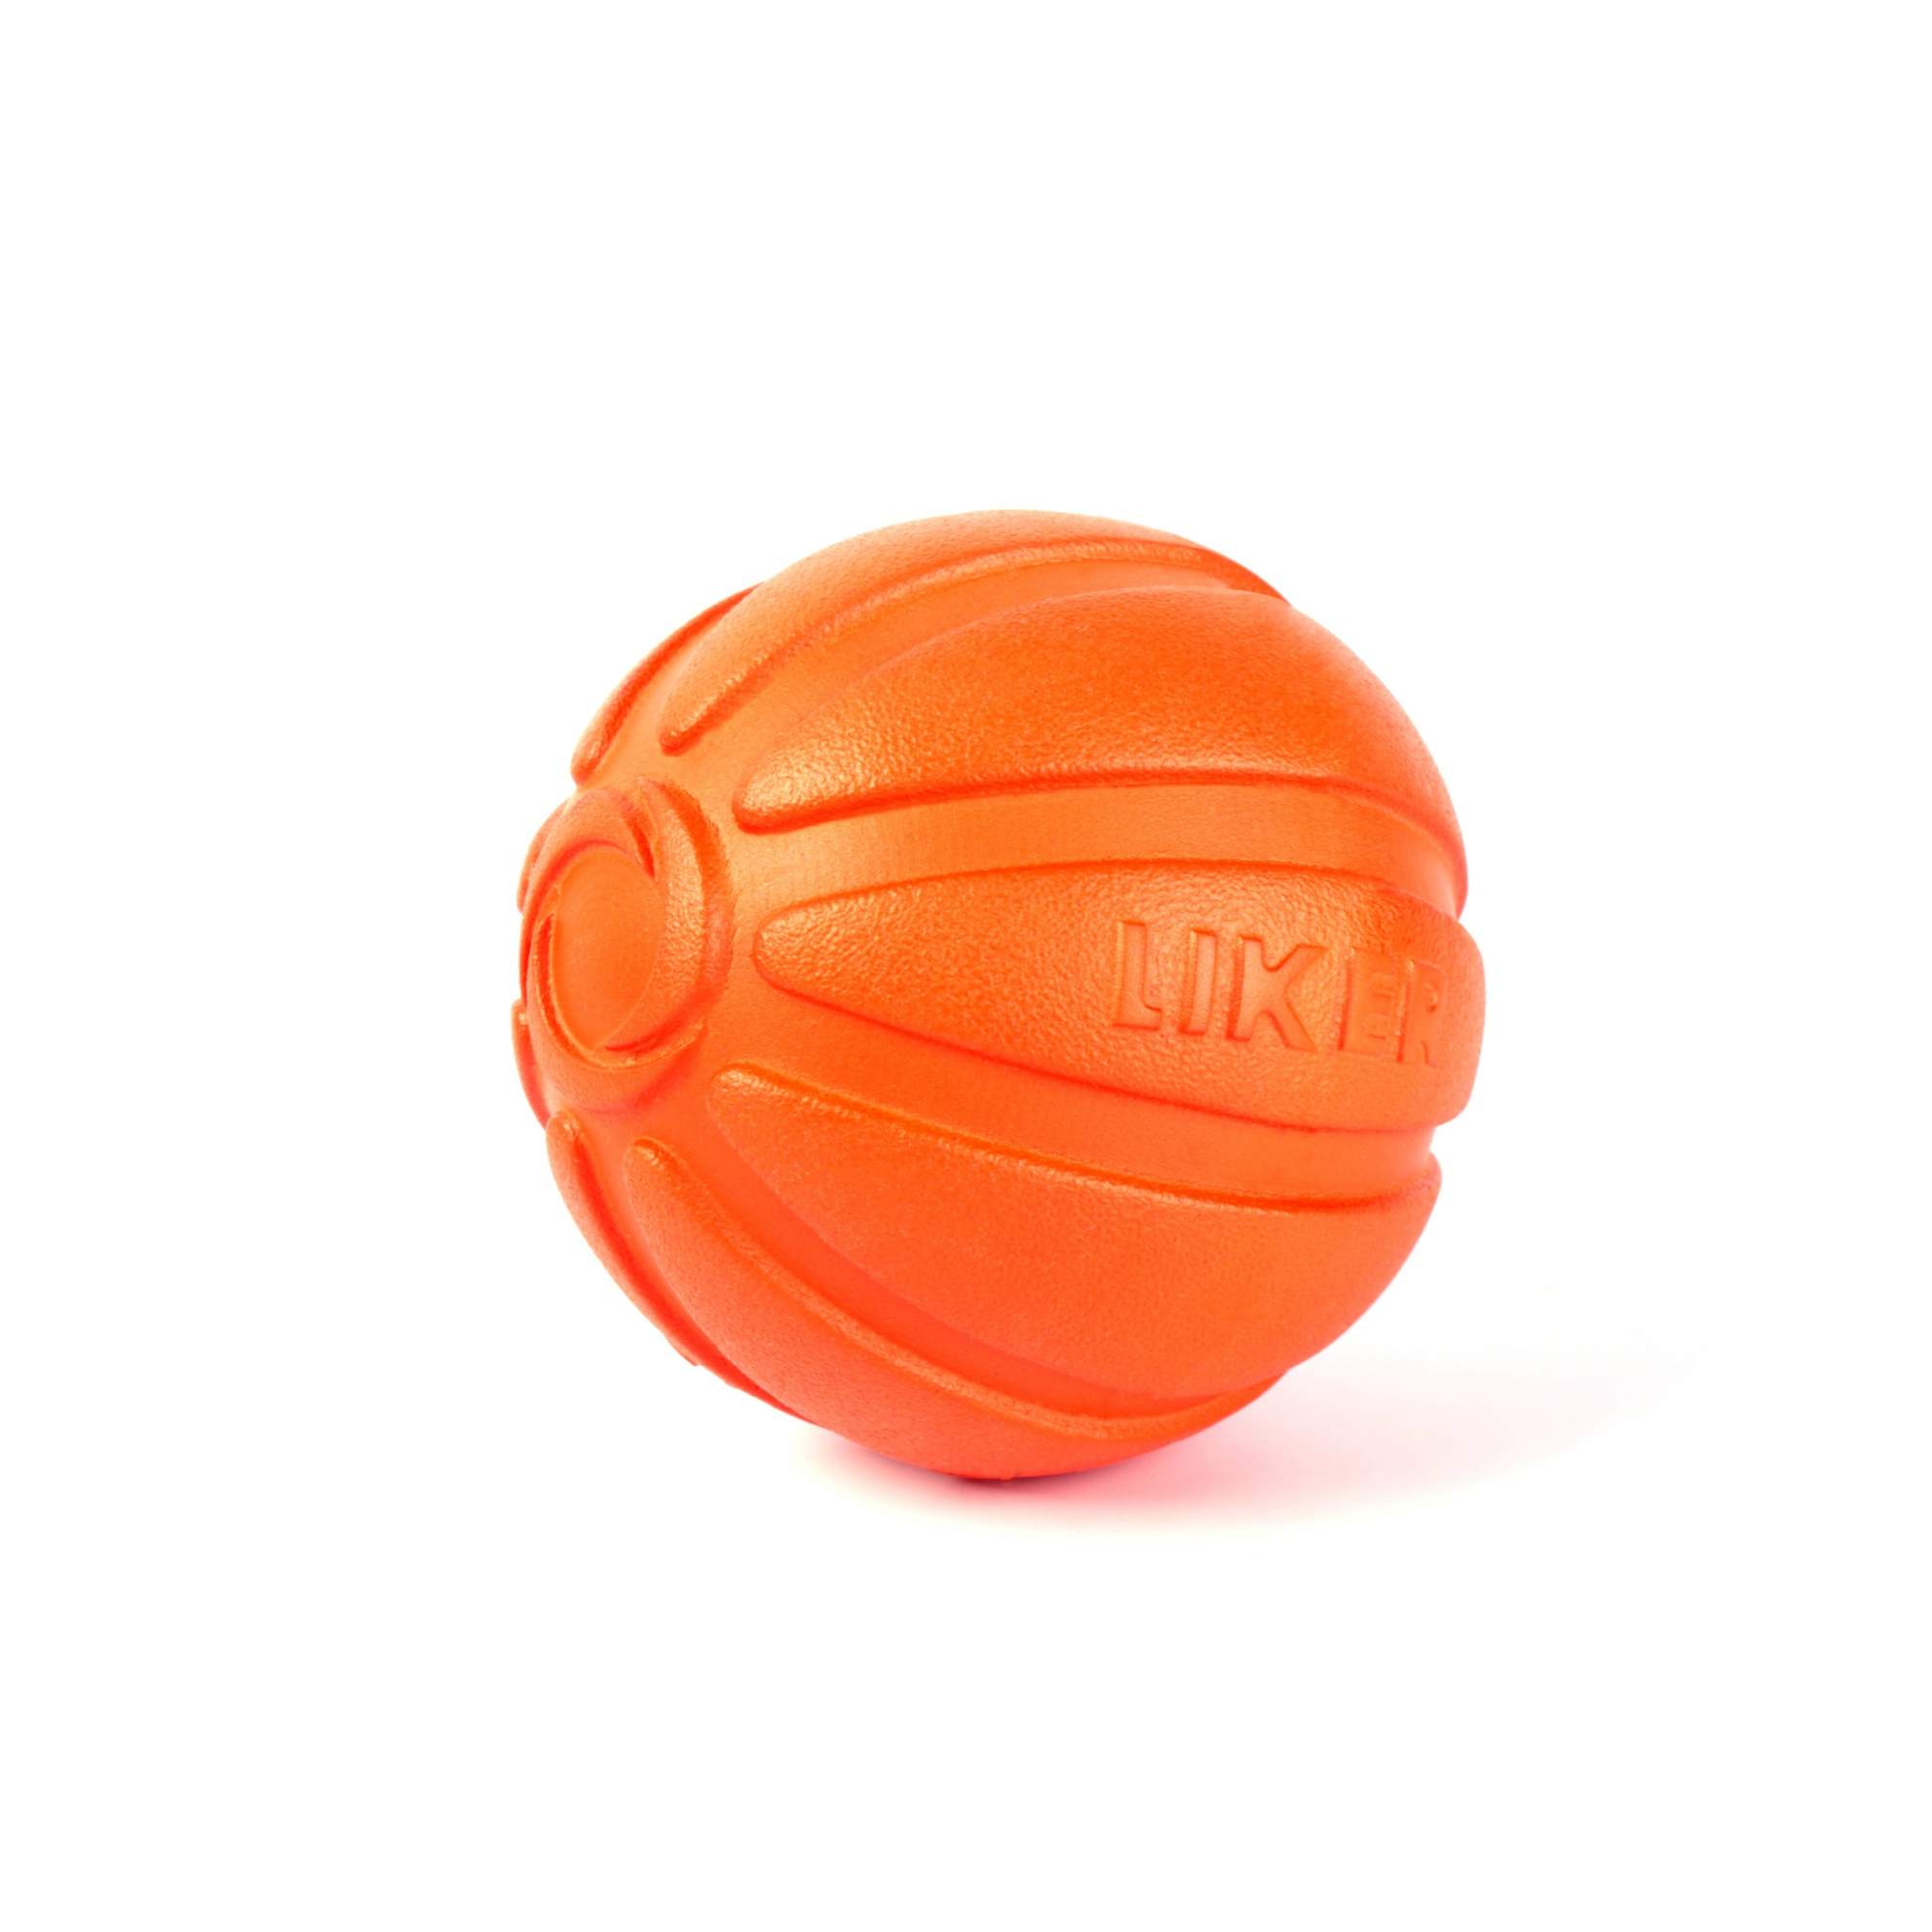 Мячик для щенков и собак мелких пород LIKER, оранжевый, 5 см